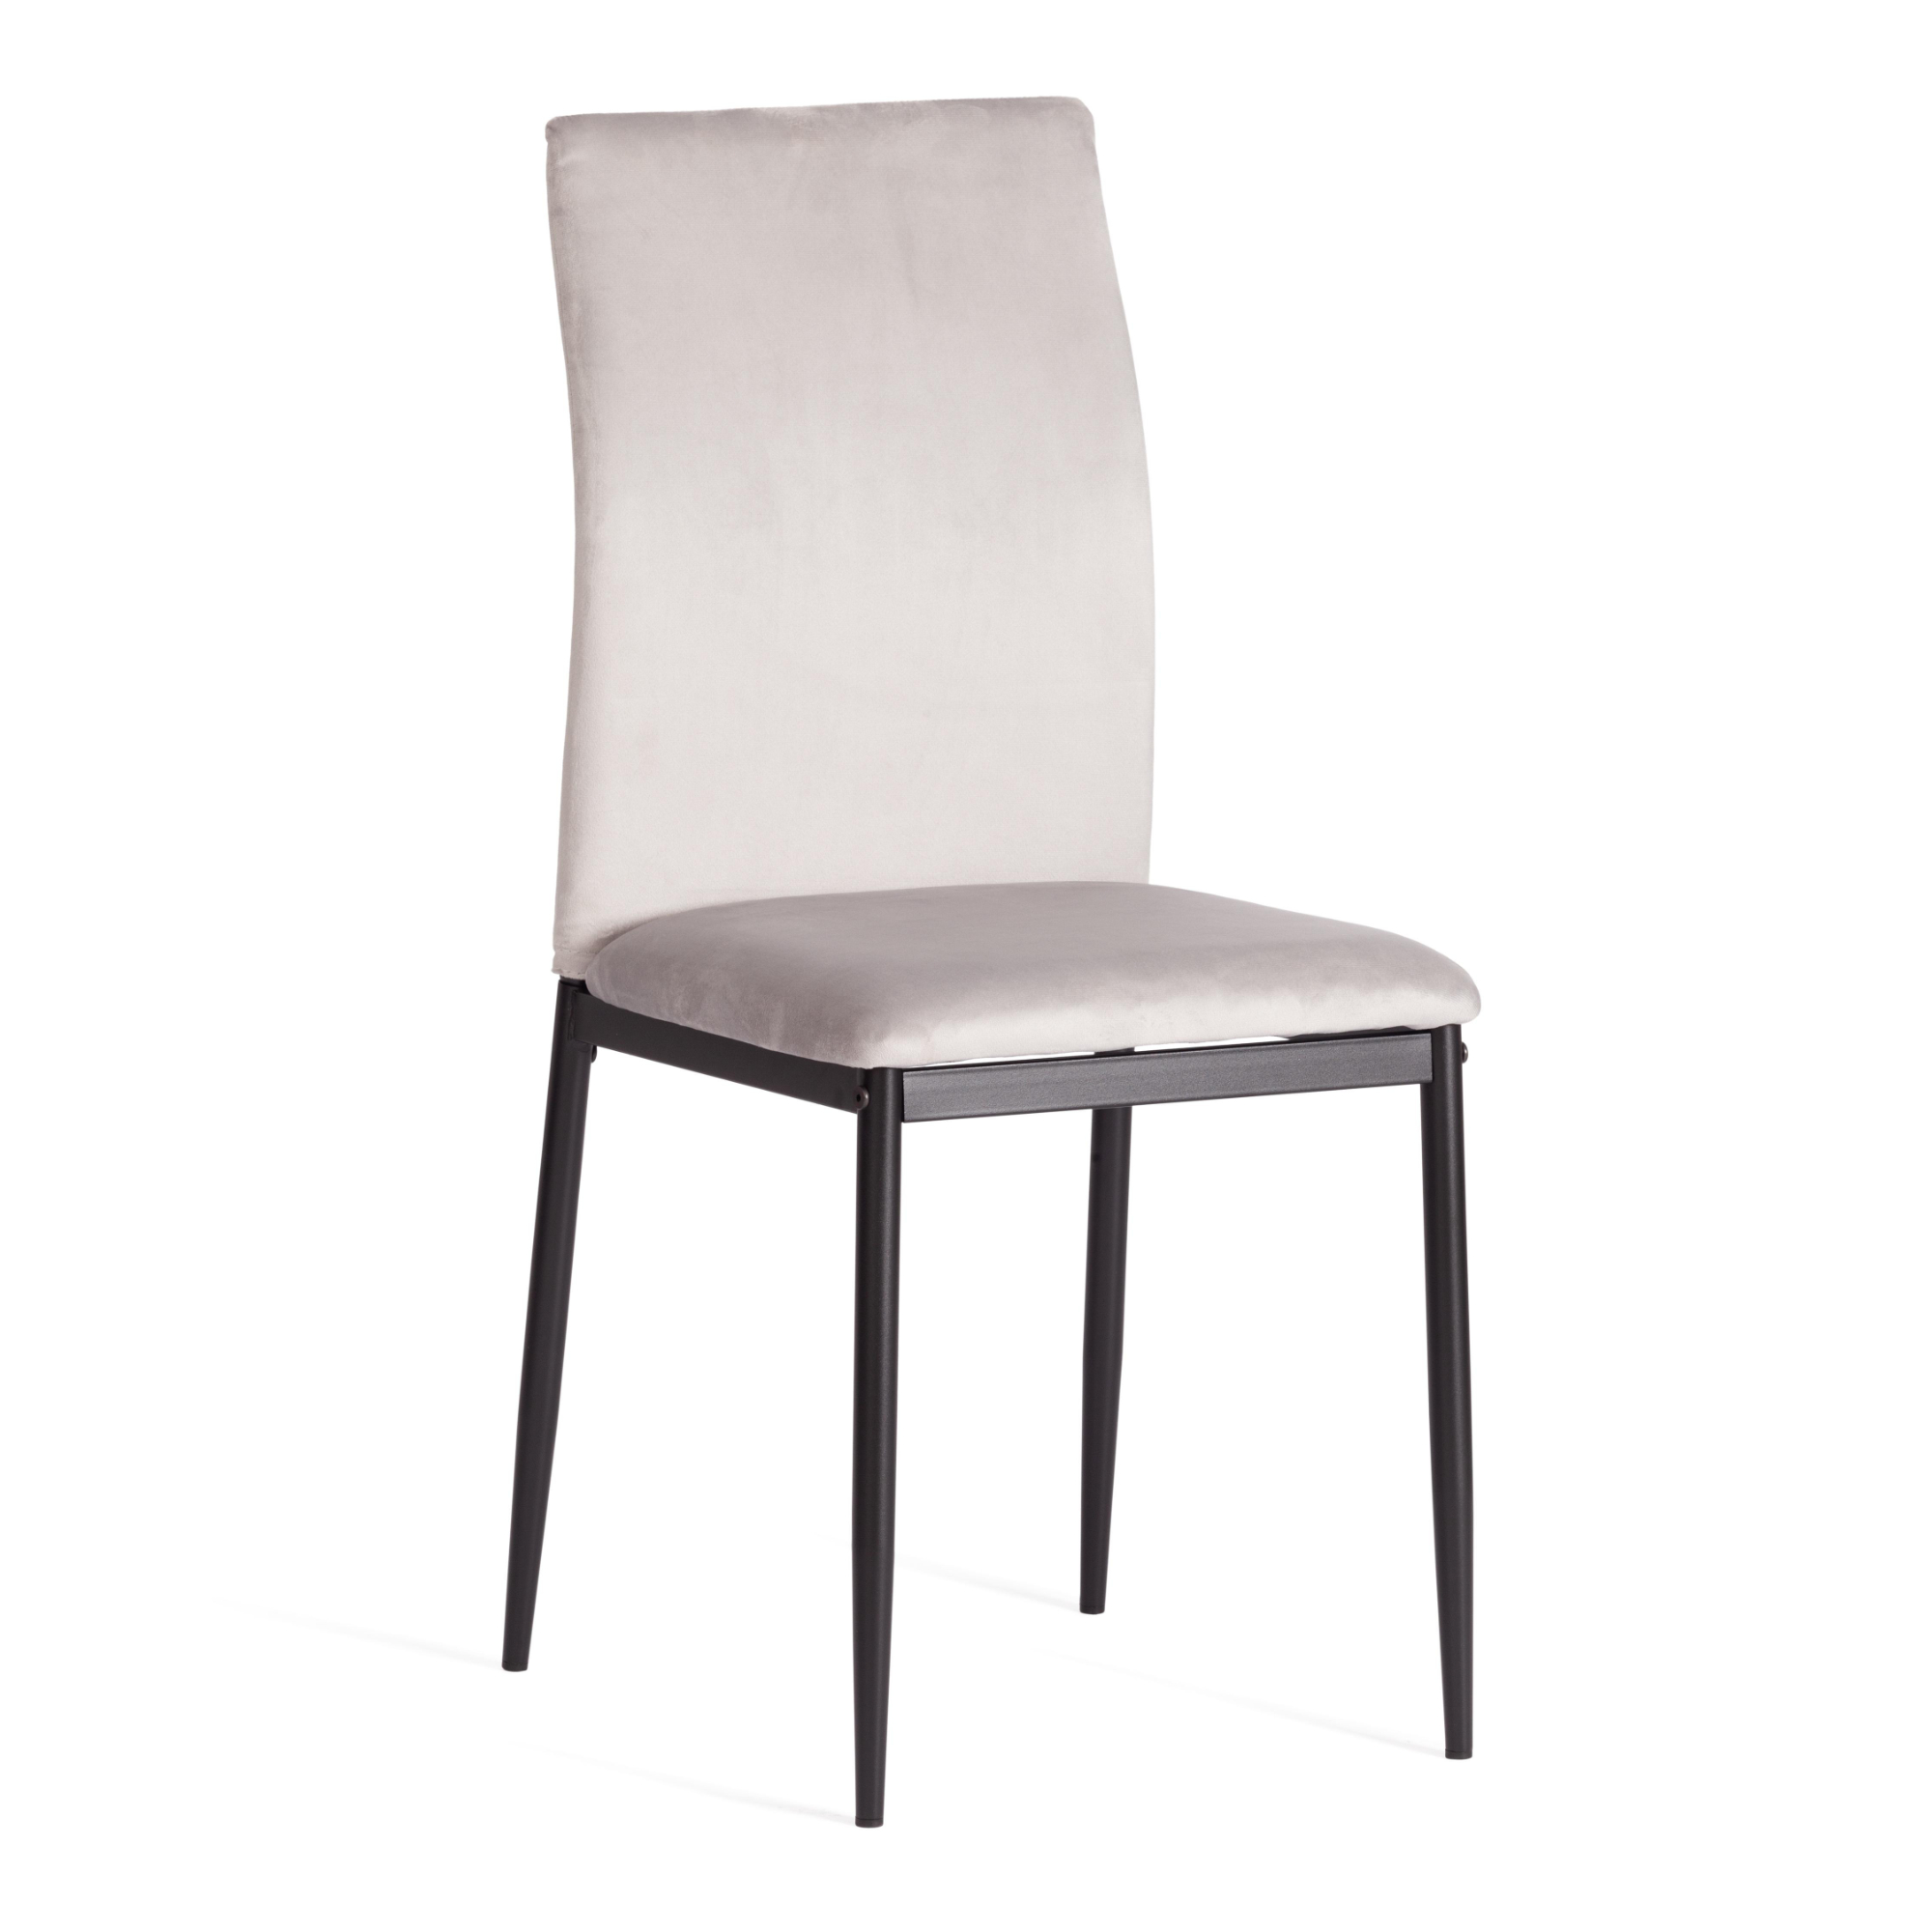 стул пластиковый усиленный стекловолокном для дома и спальни кабинета гостиной комбинированный стол и стул маленький низкий стул для ры Стул ТС Capri светло-серый вельвет 49,5х41х93,5 см